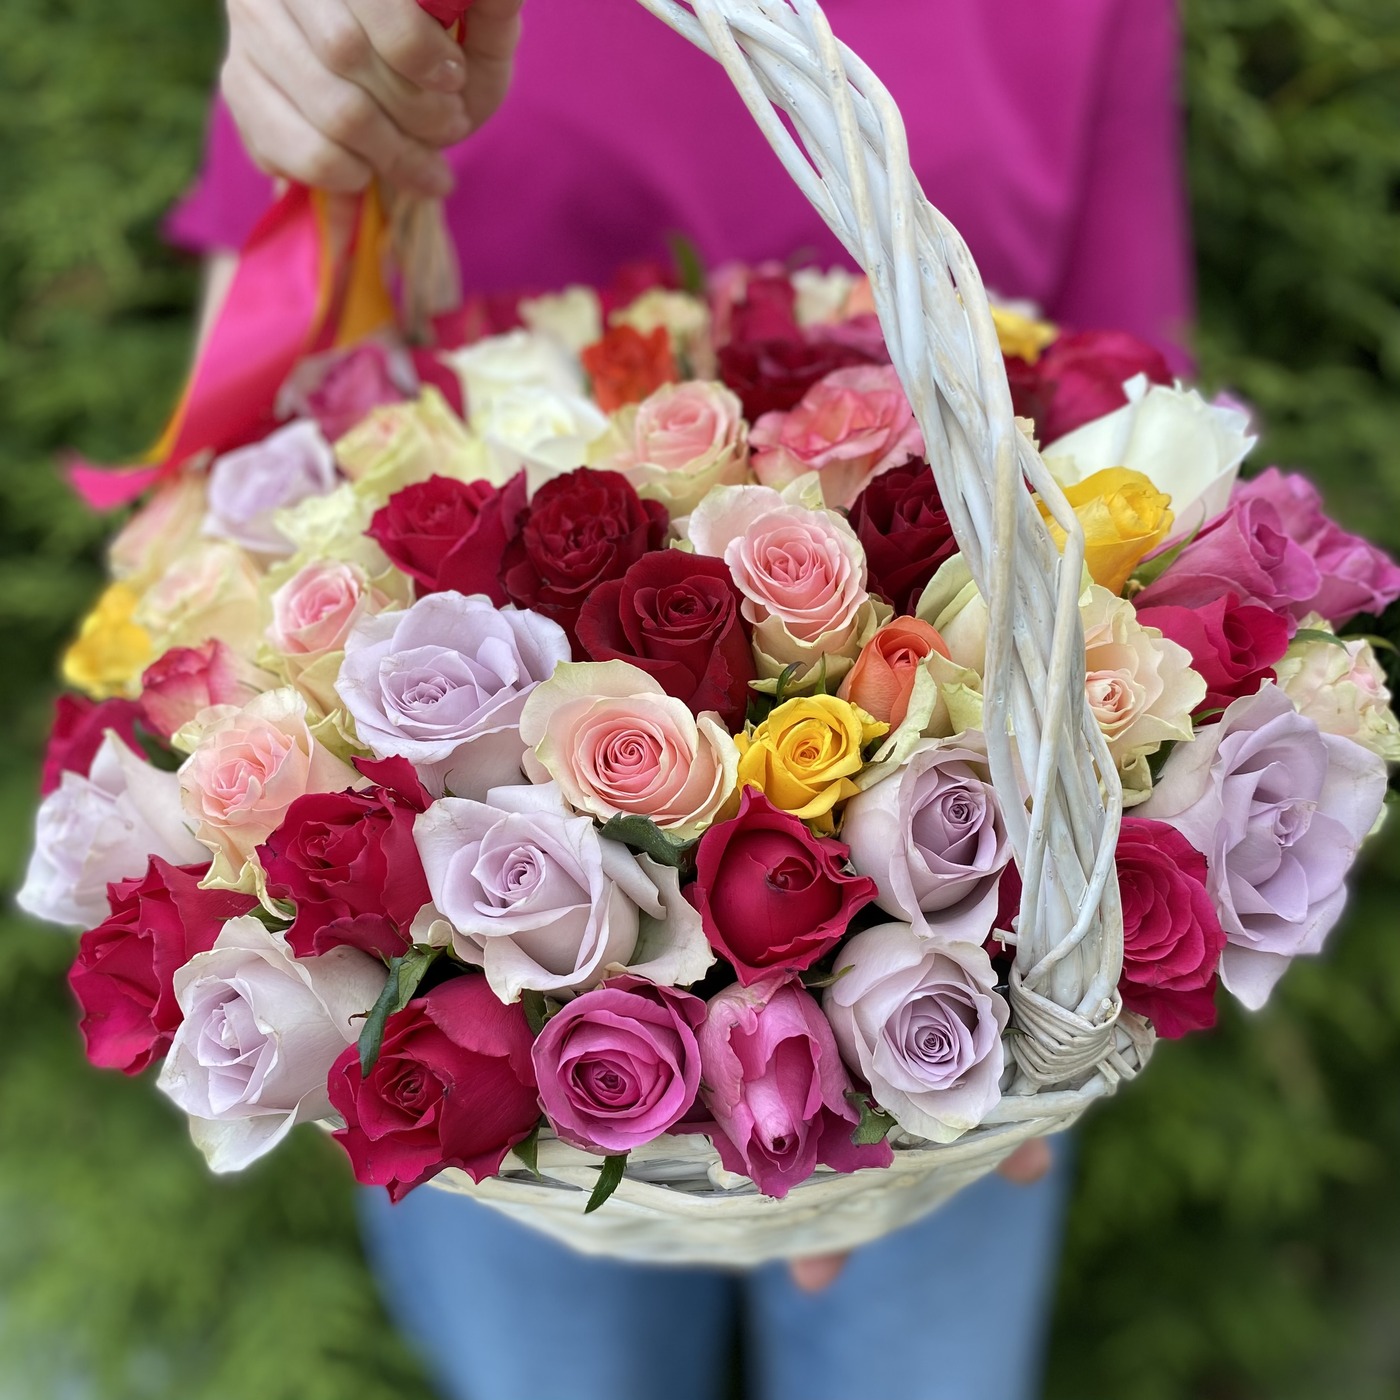 Роскошная корзина разноцветных роз до 8000 руб на День Восьмого Марта